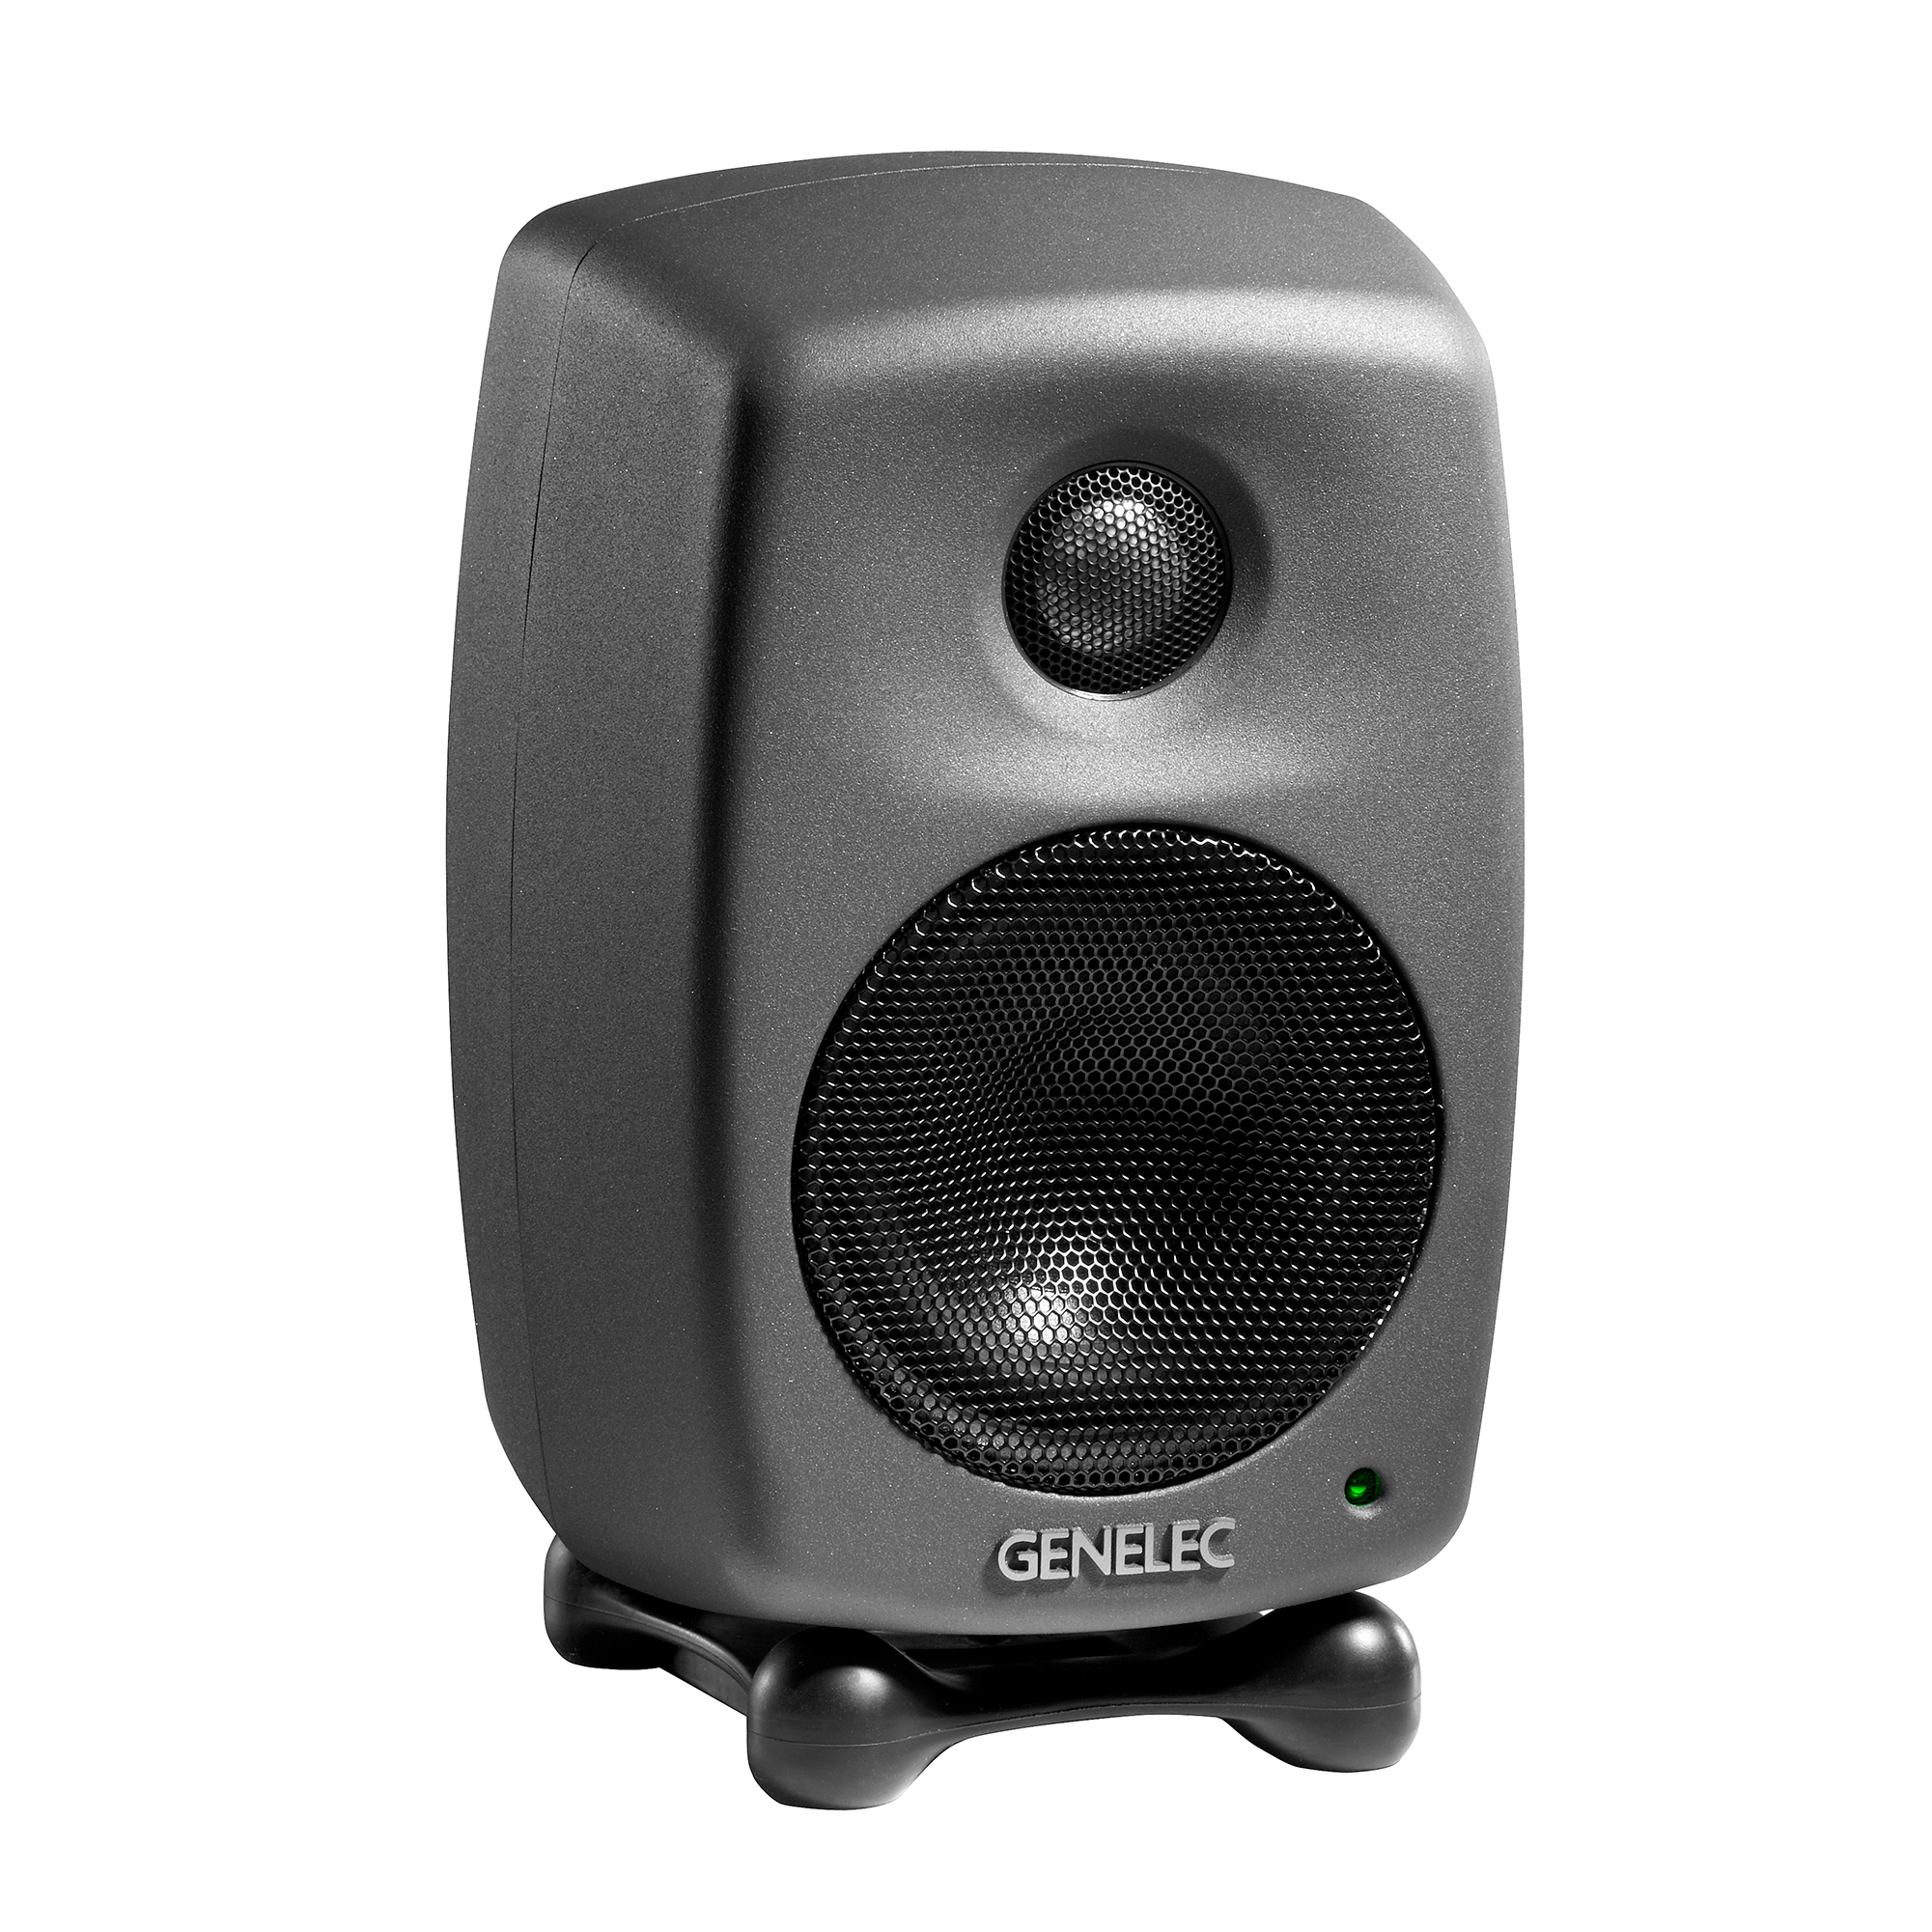 genelec computer speakers